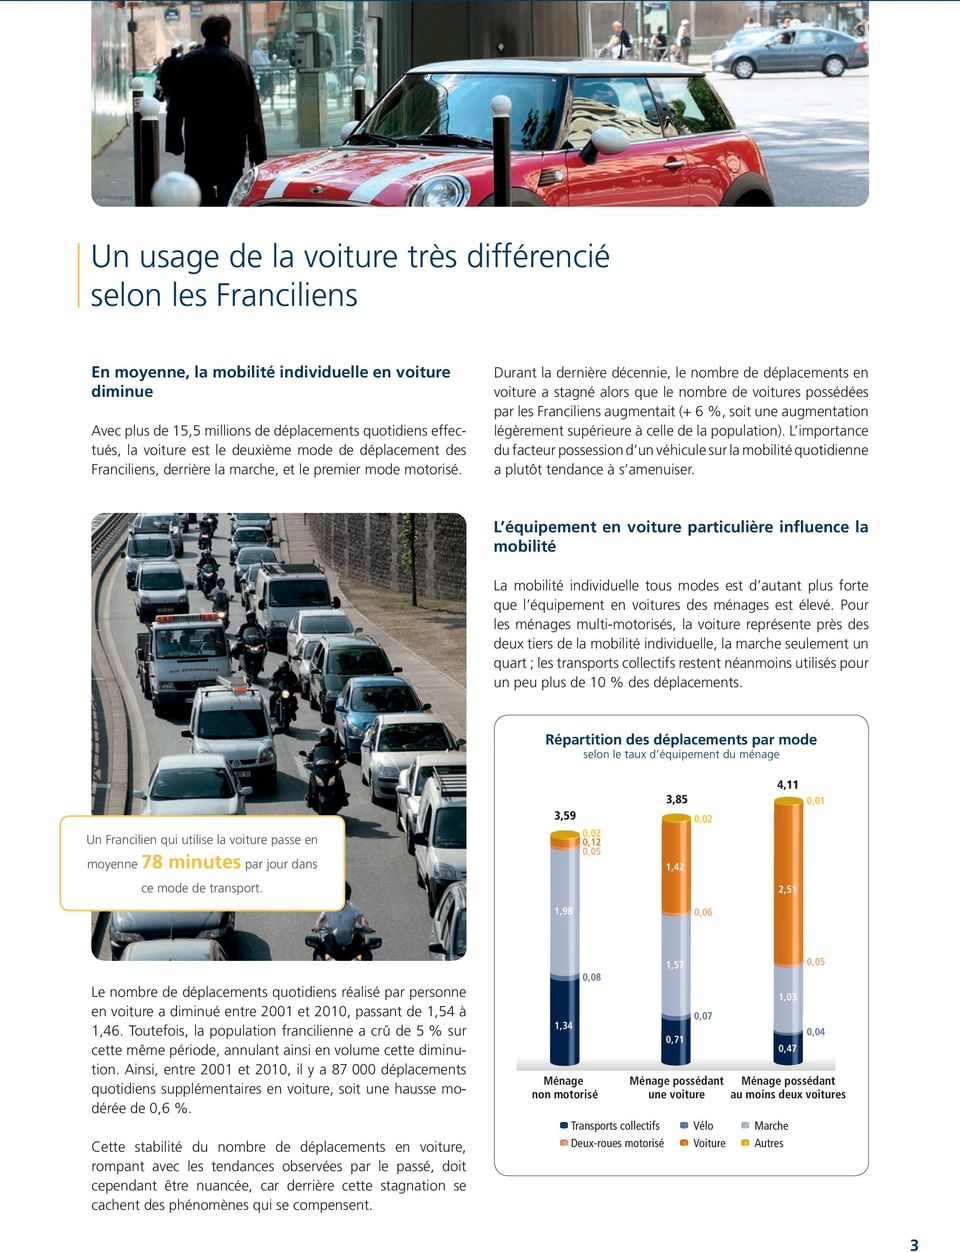 Durant la dernière décennie, le nombre de déplacements en voiture a stagné alors que le nombre de voitures possédées par les Franciliens augmentait (+ 6 %, soit une augmentation légèrement supérieure